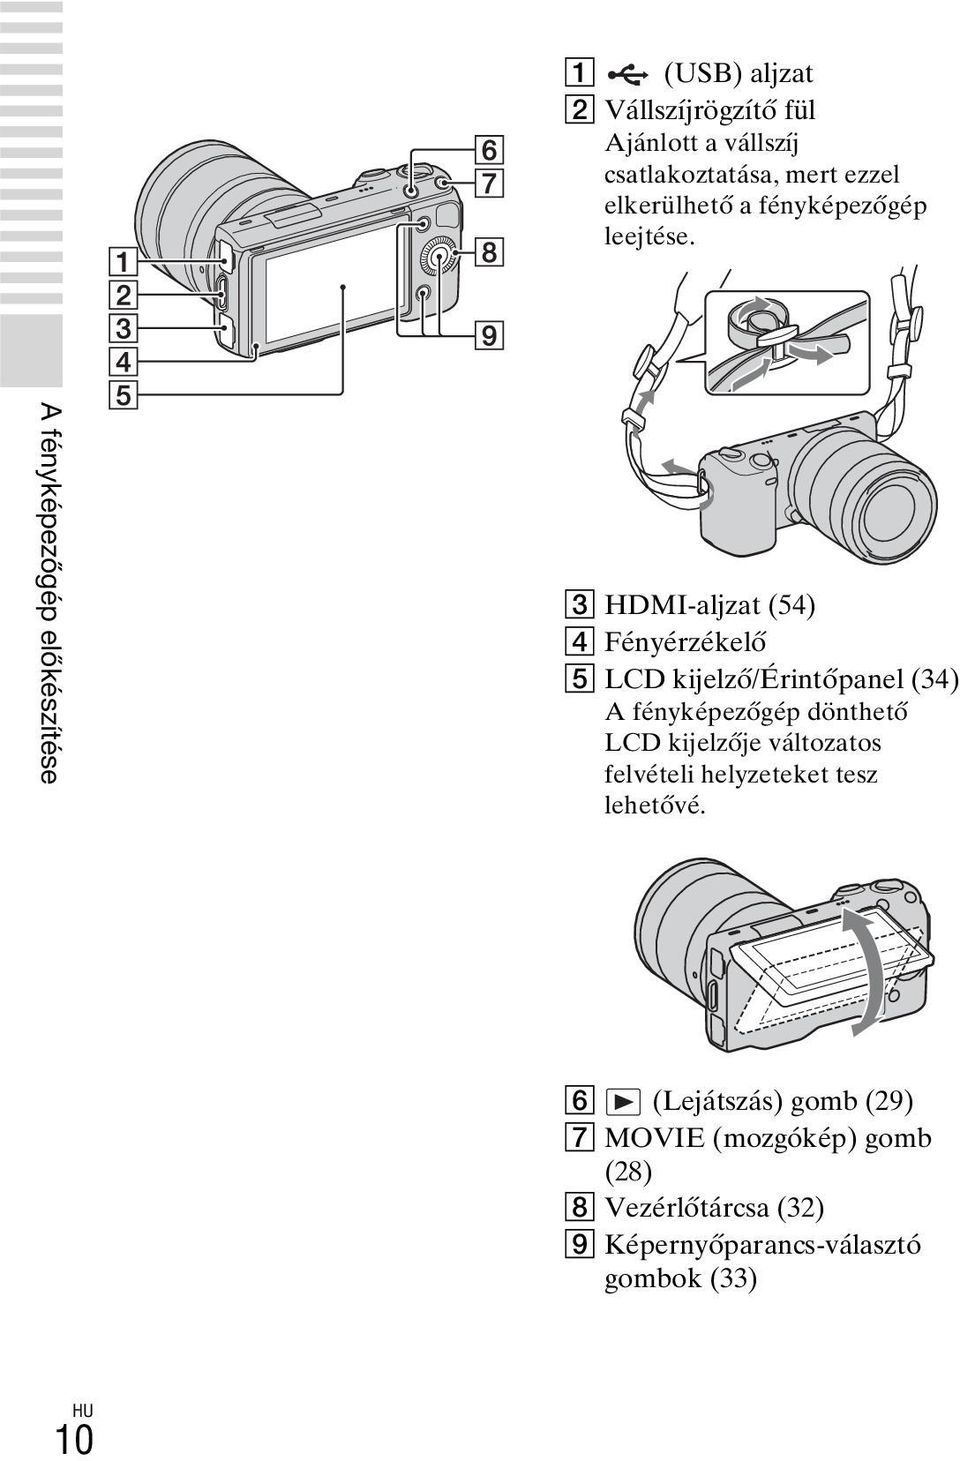 A fényképezőgép előkészítése C HDMI-aljzat (54) D Fényérzékelő E LCD kijelző/érintőpanel (34) A